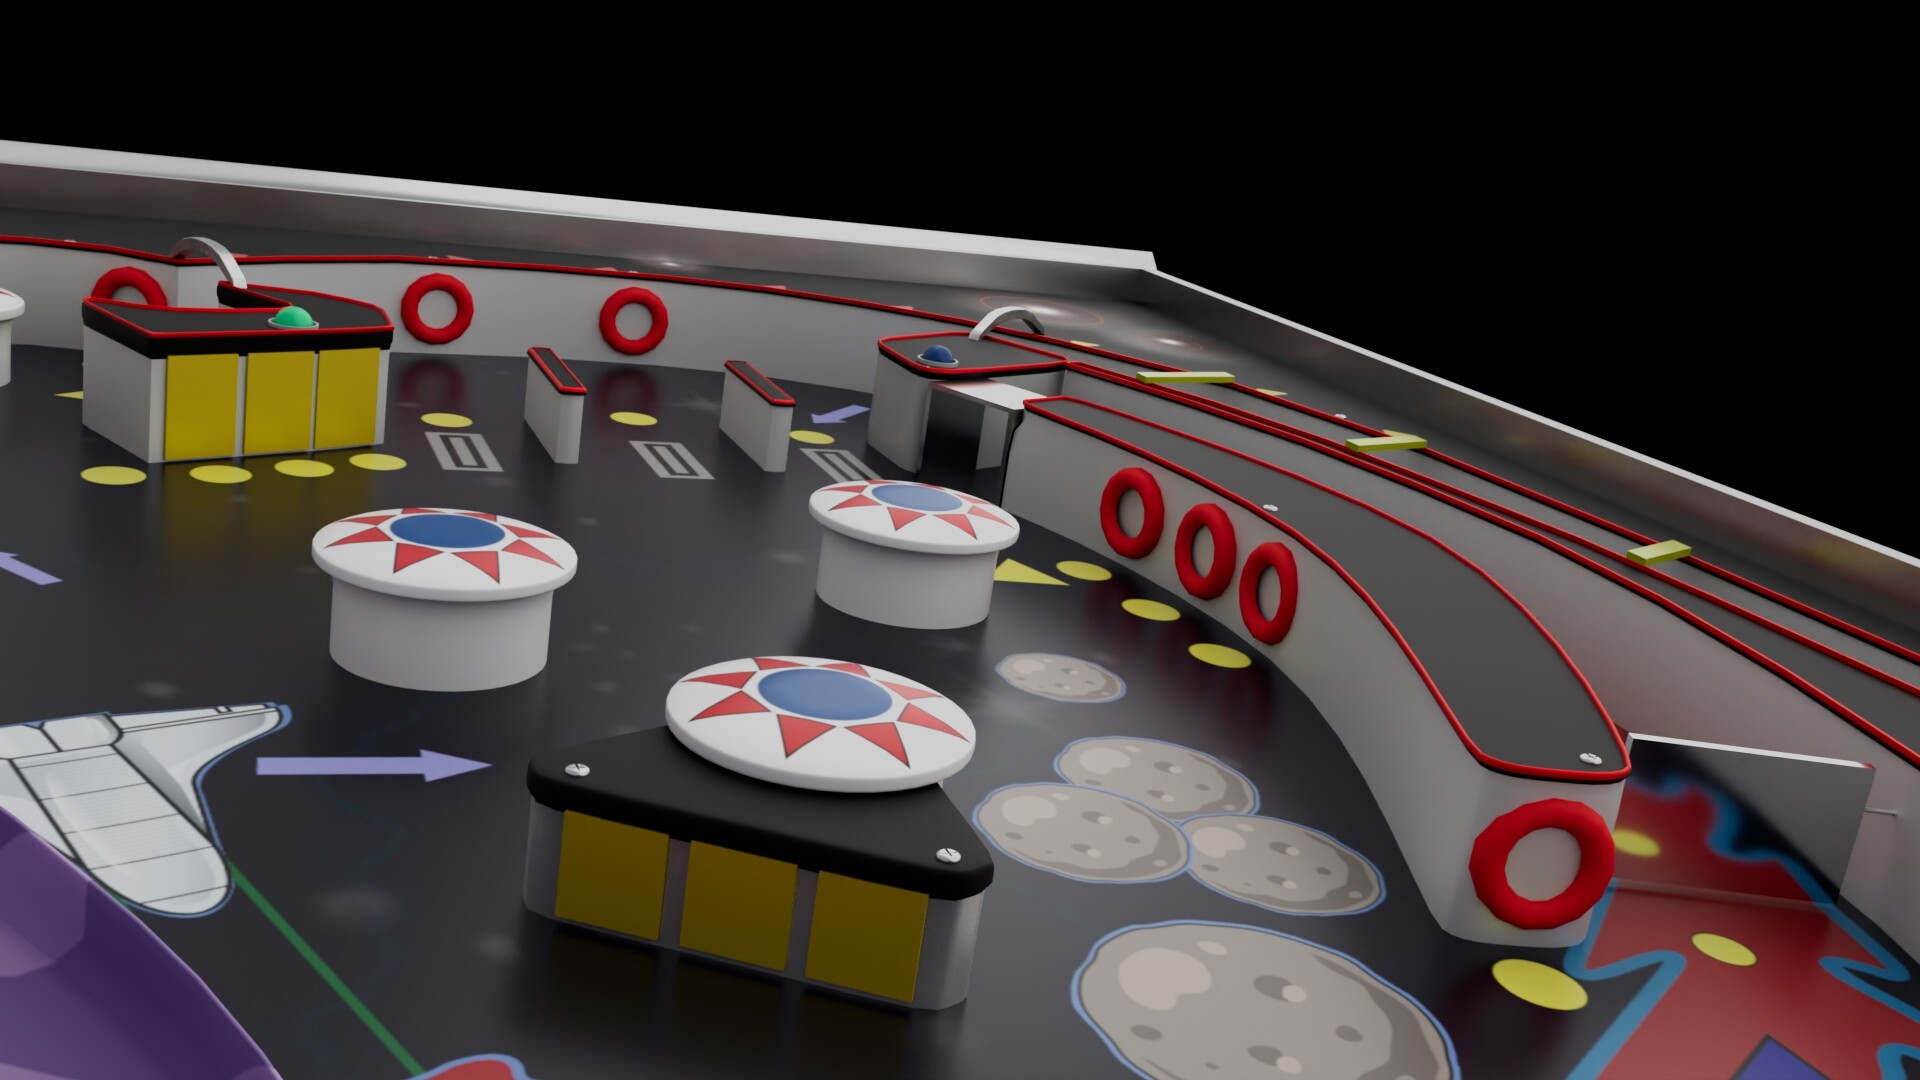 Hayden Barnes @ #NeurIPS2023 on X: Running 3D Pinball Space Cadet